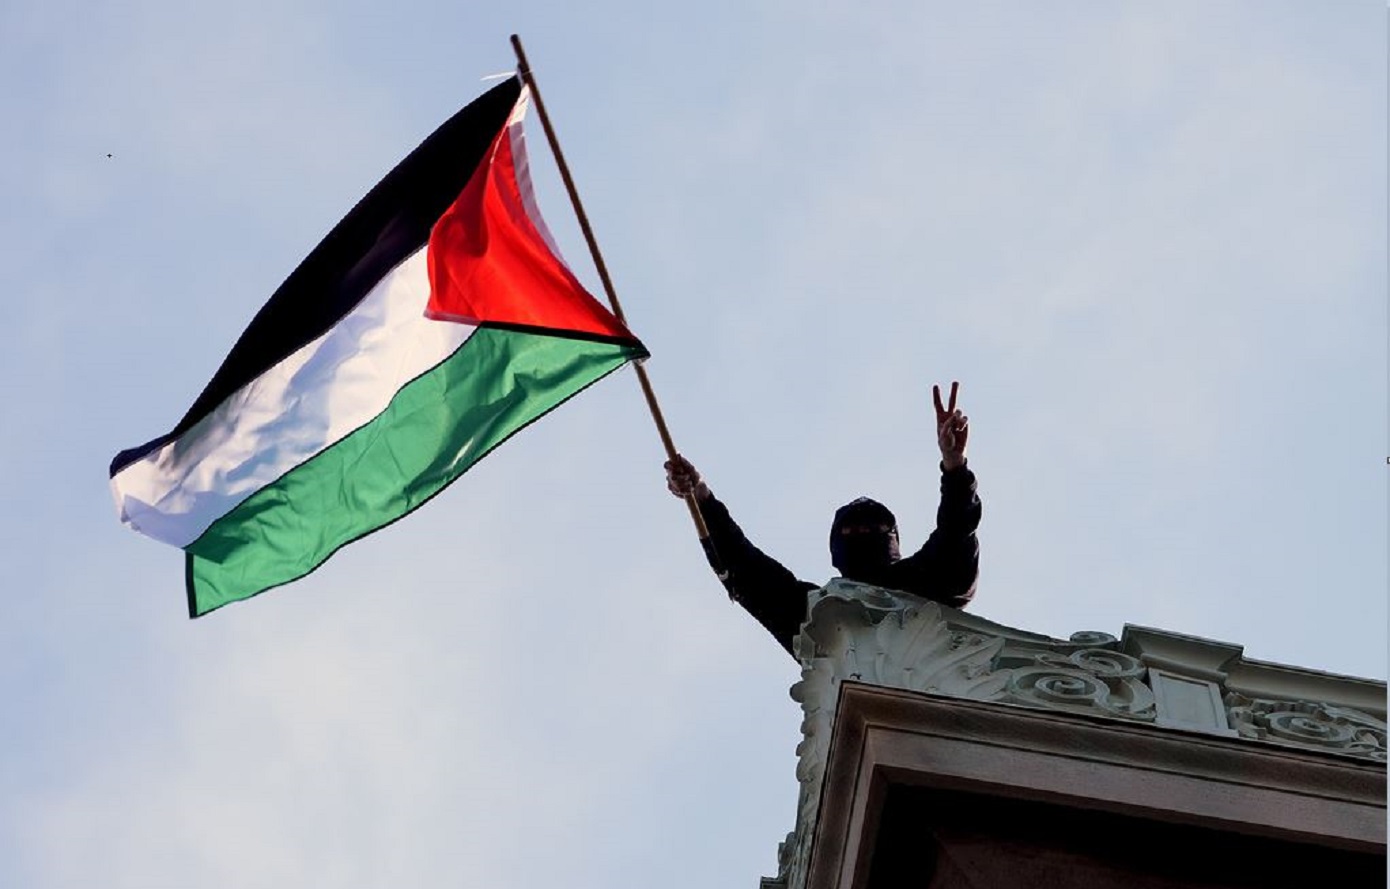 Το Κολούμπια ακύρωσε την τελετή αποφοίτησης λόγω των διαδηλώσεων για τη Γάζα